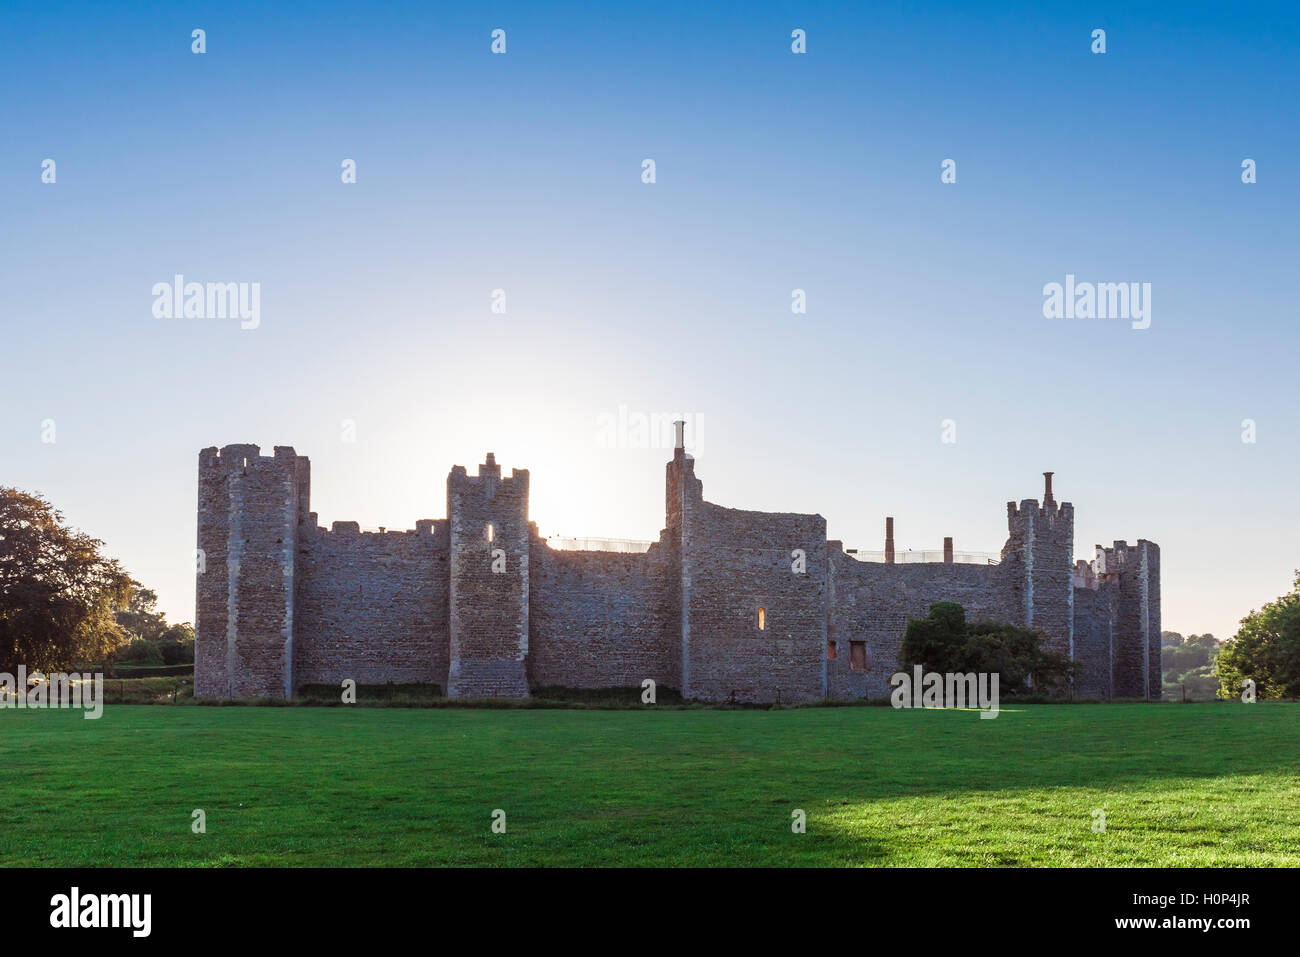 Inglaterra castillo medieval, muro cortina de un castillo del siglo XII, en Suffolk, Inglaterra, Reino Unido, visto al atardecer desde dentro de su parque que le rodea. Foto de stock